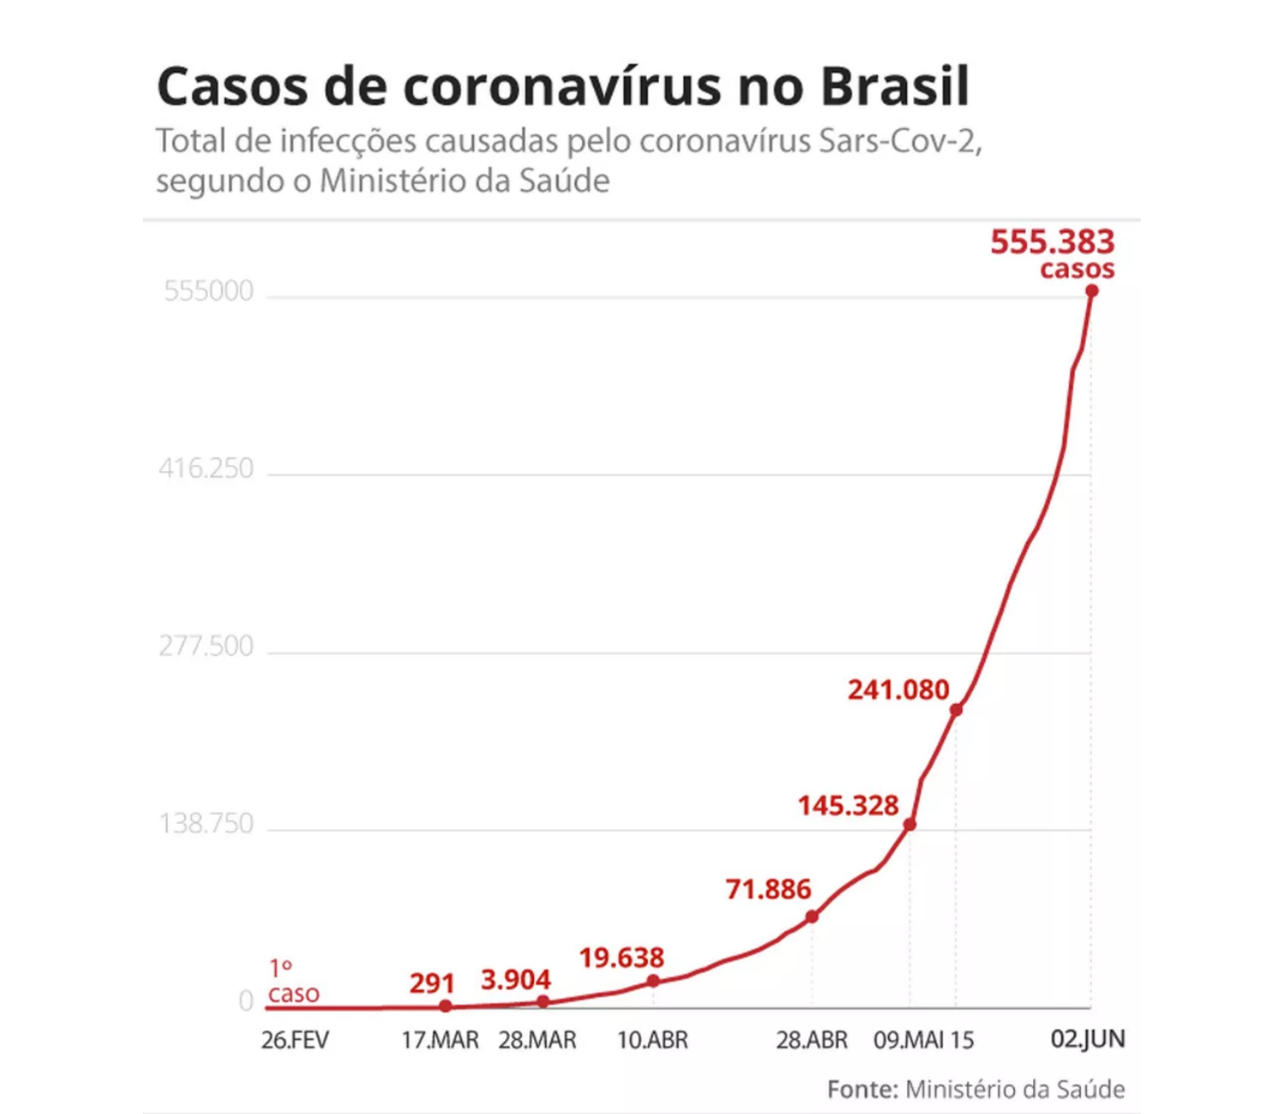 巴西新增逾28万新冠肺炎确诊病例,累计超55万例